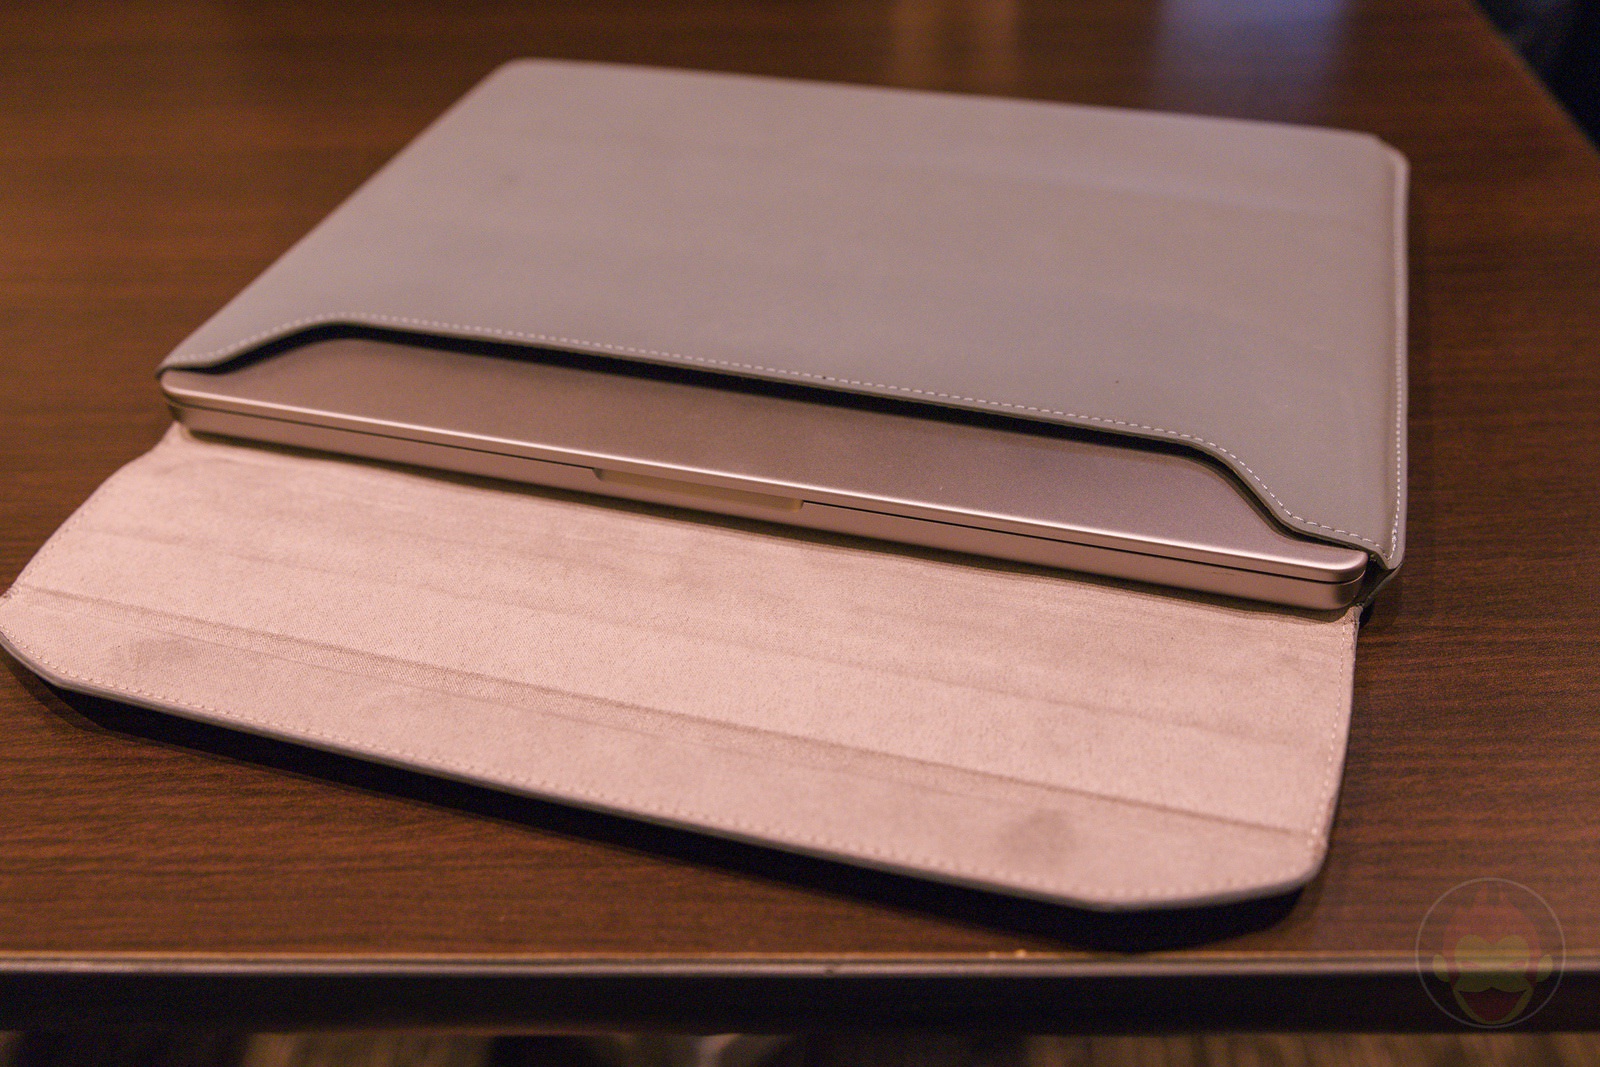 N-max-N-new-laptop-case-for-macbooks-makuake-06.jpg